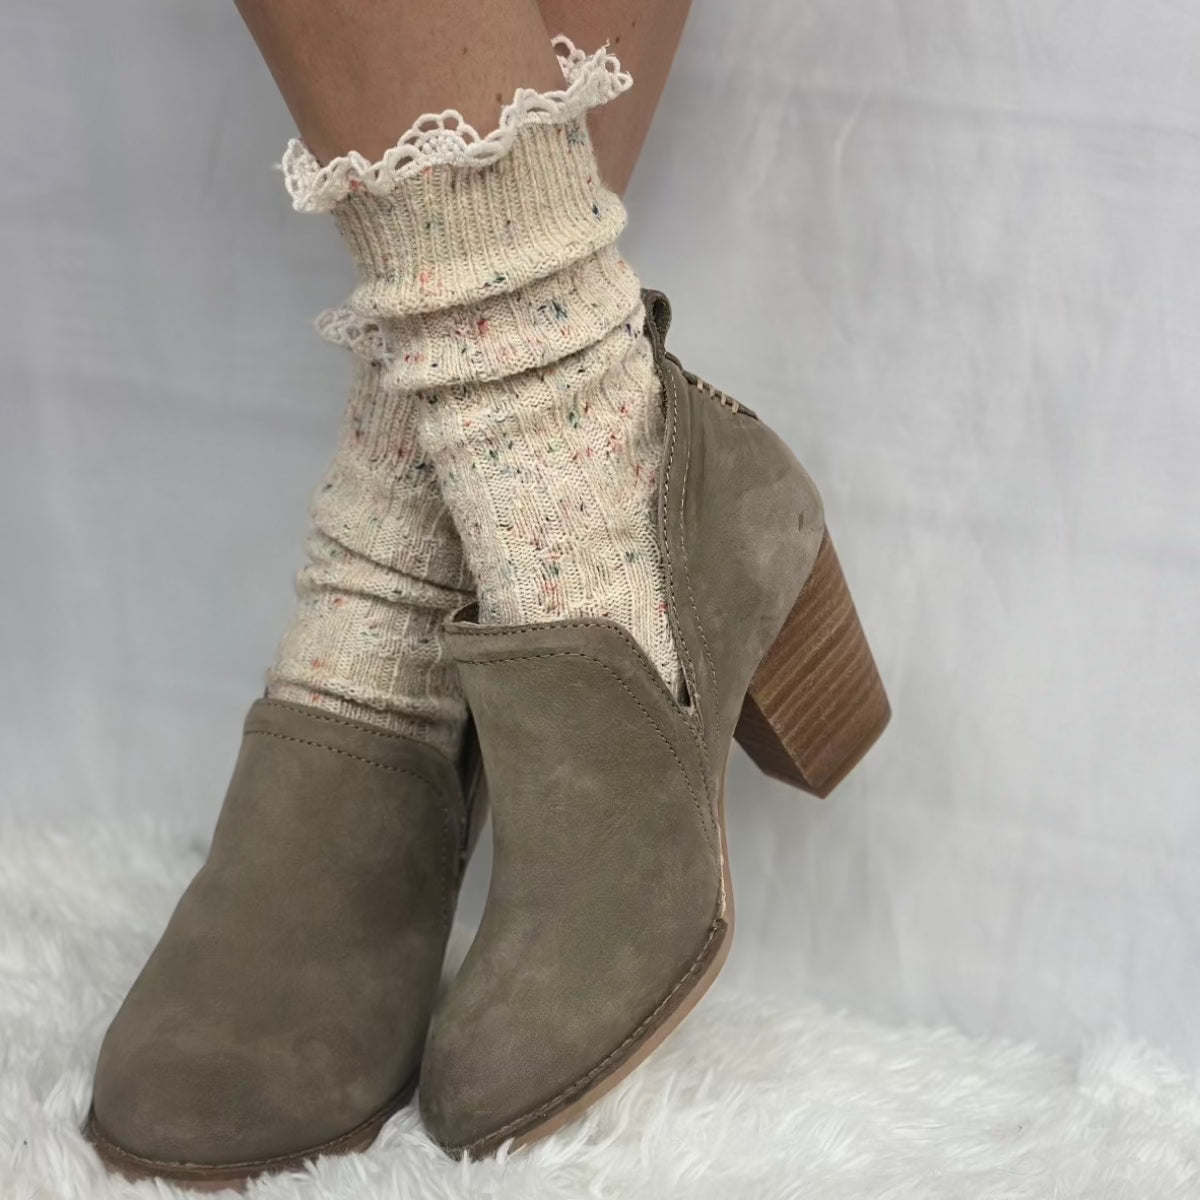 BOOTIE lace slouch socks - oatmeal, cute short ankle socks, boot socks women, quality hosiery ladies